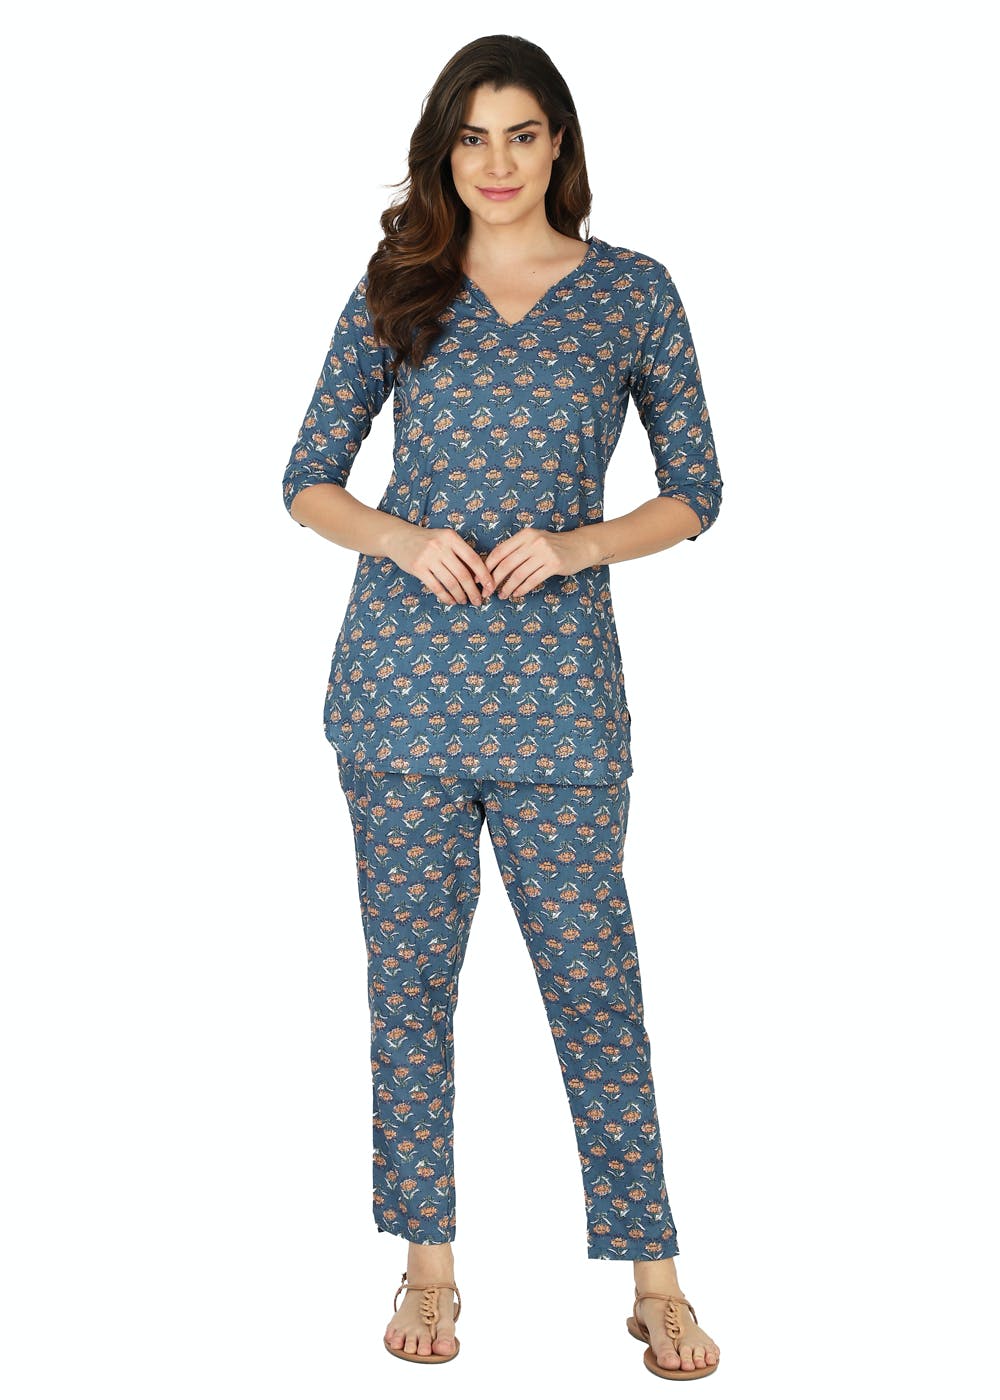 Floral Printed Blue Pyjamas Nightsuit Set